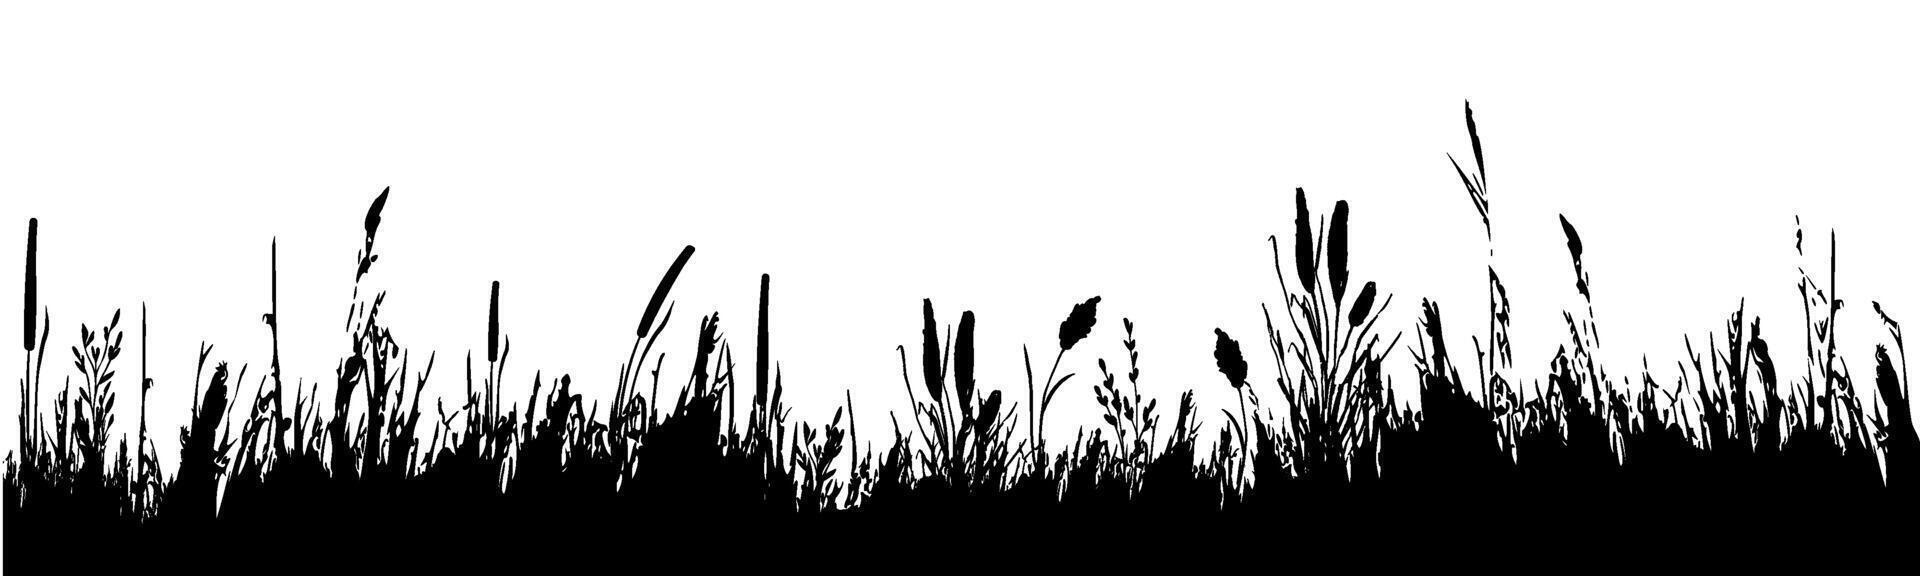 beeld van een monochroom riet, gras of biezen Aan een wit background.isolated vector tekening.zwart gras grafisch silhouet.